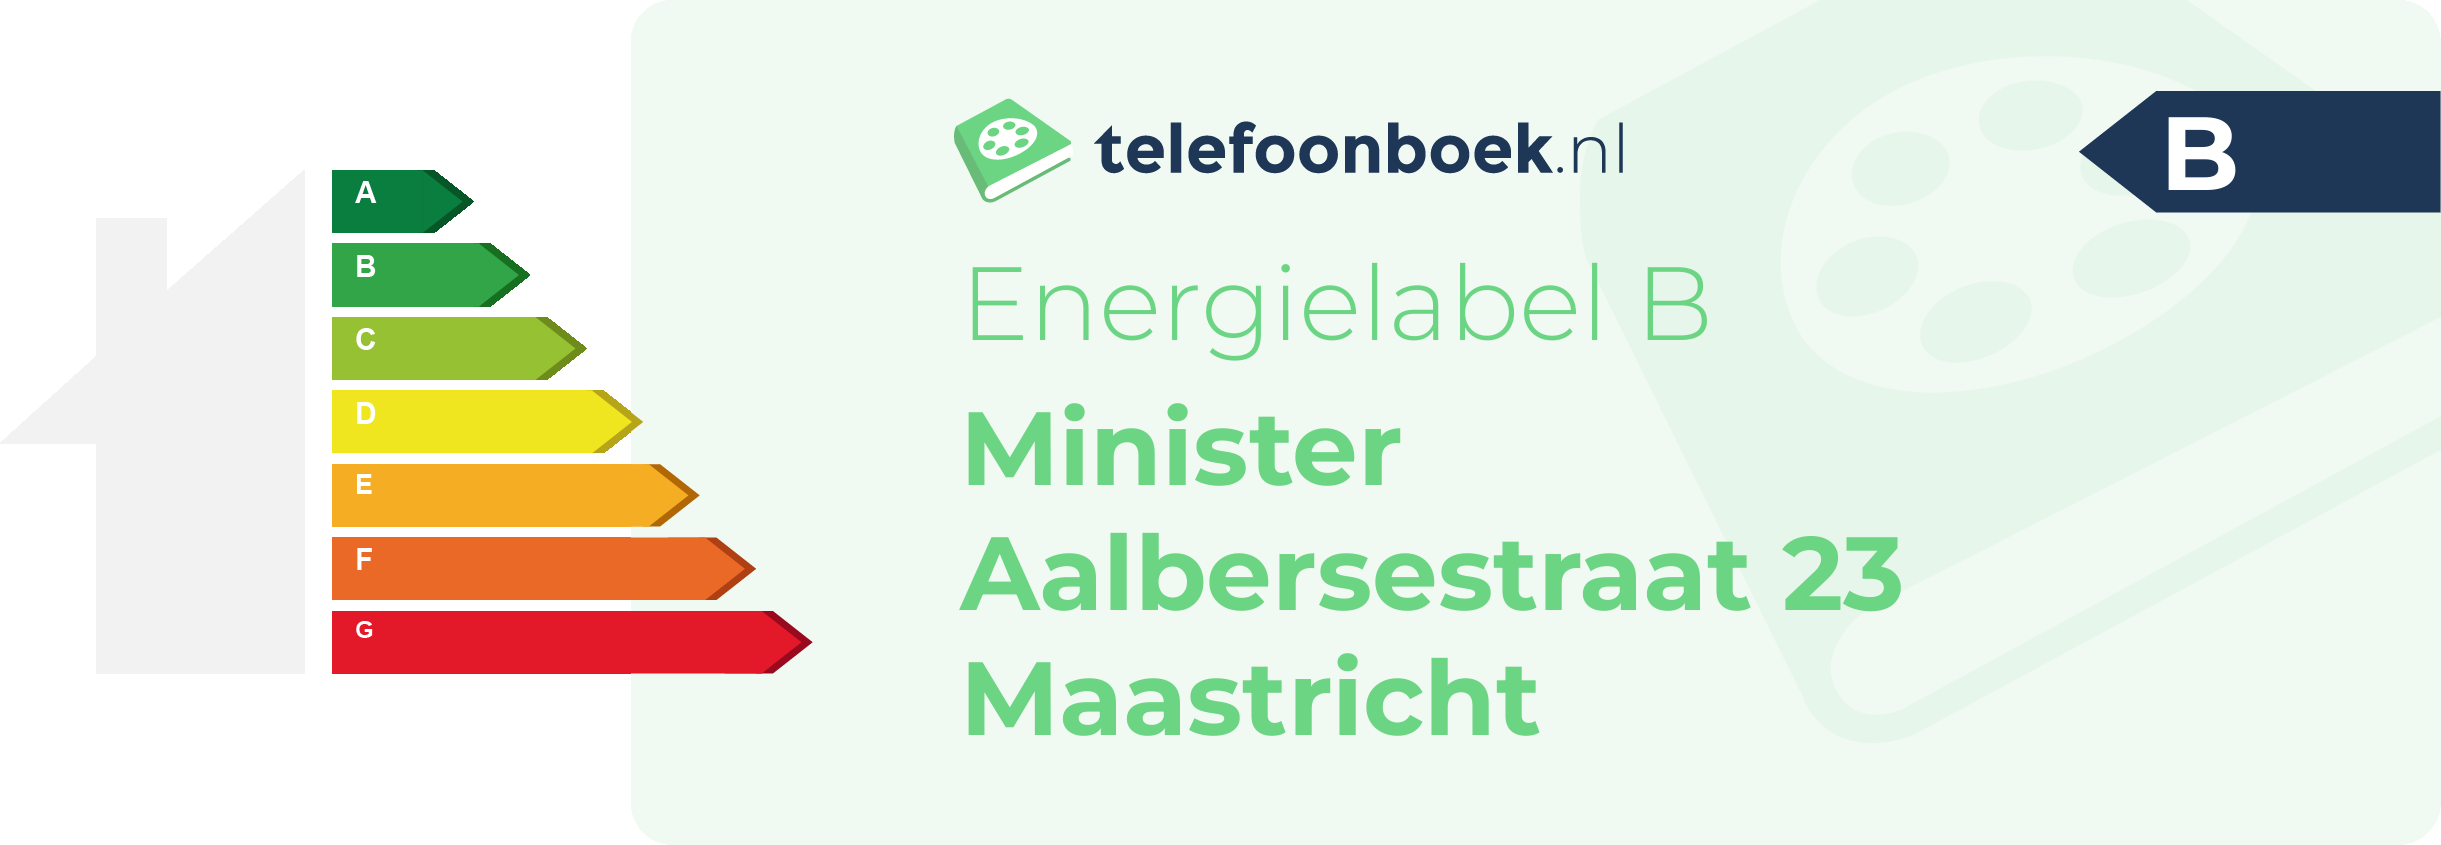 Energielabel Minister Aalbersestraat 23 Maastricht